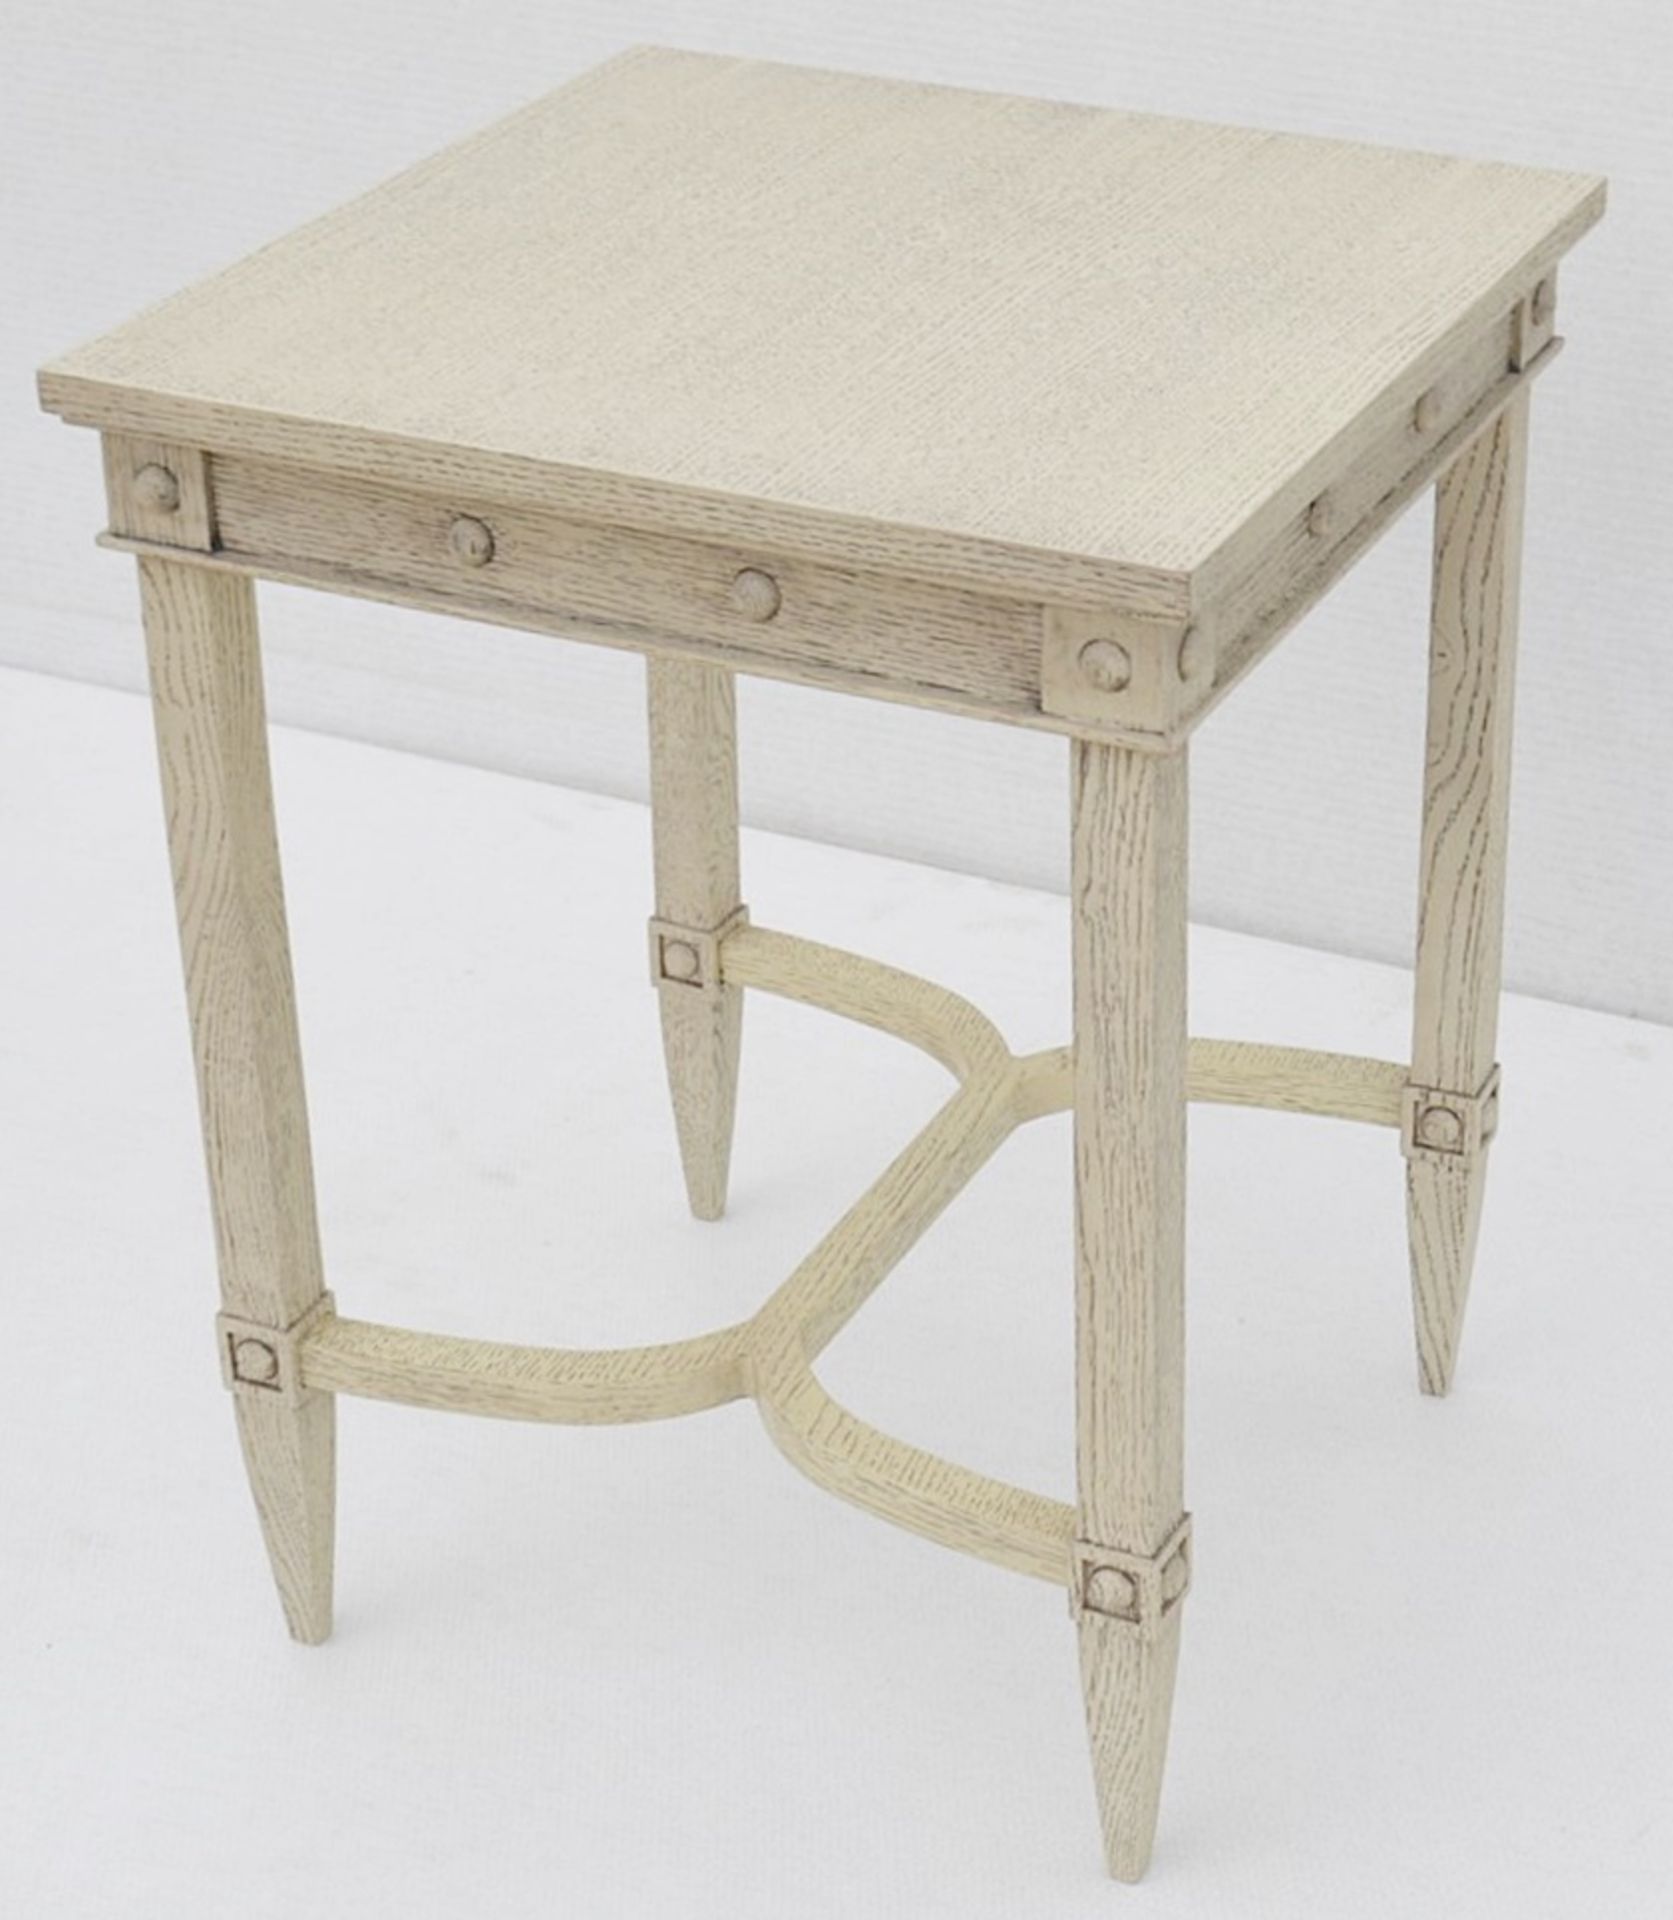 1 x JUSTIN VAN BREDA 'Thomas' Designer Georgian-inspired Occasional Table - Original RRP £1,320